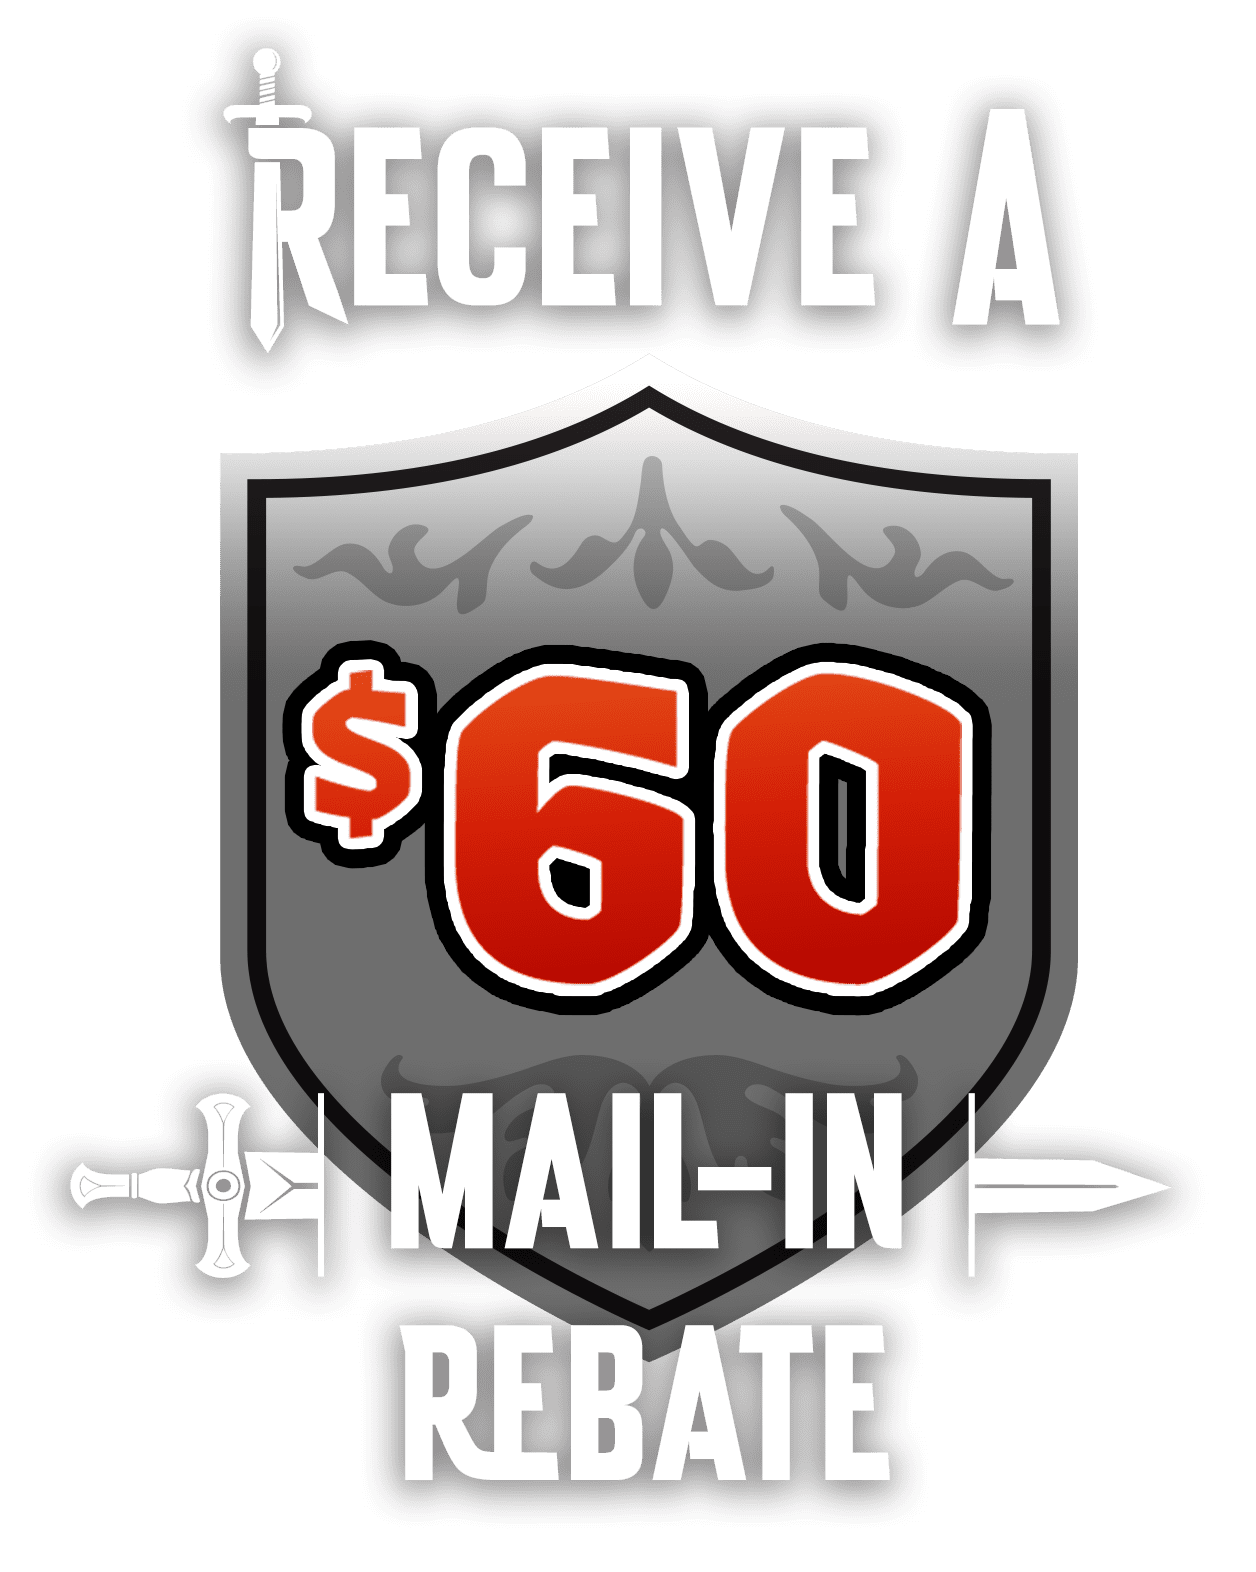 Receive a $60 mail-in Rebate